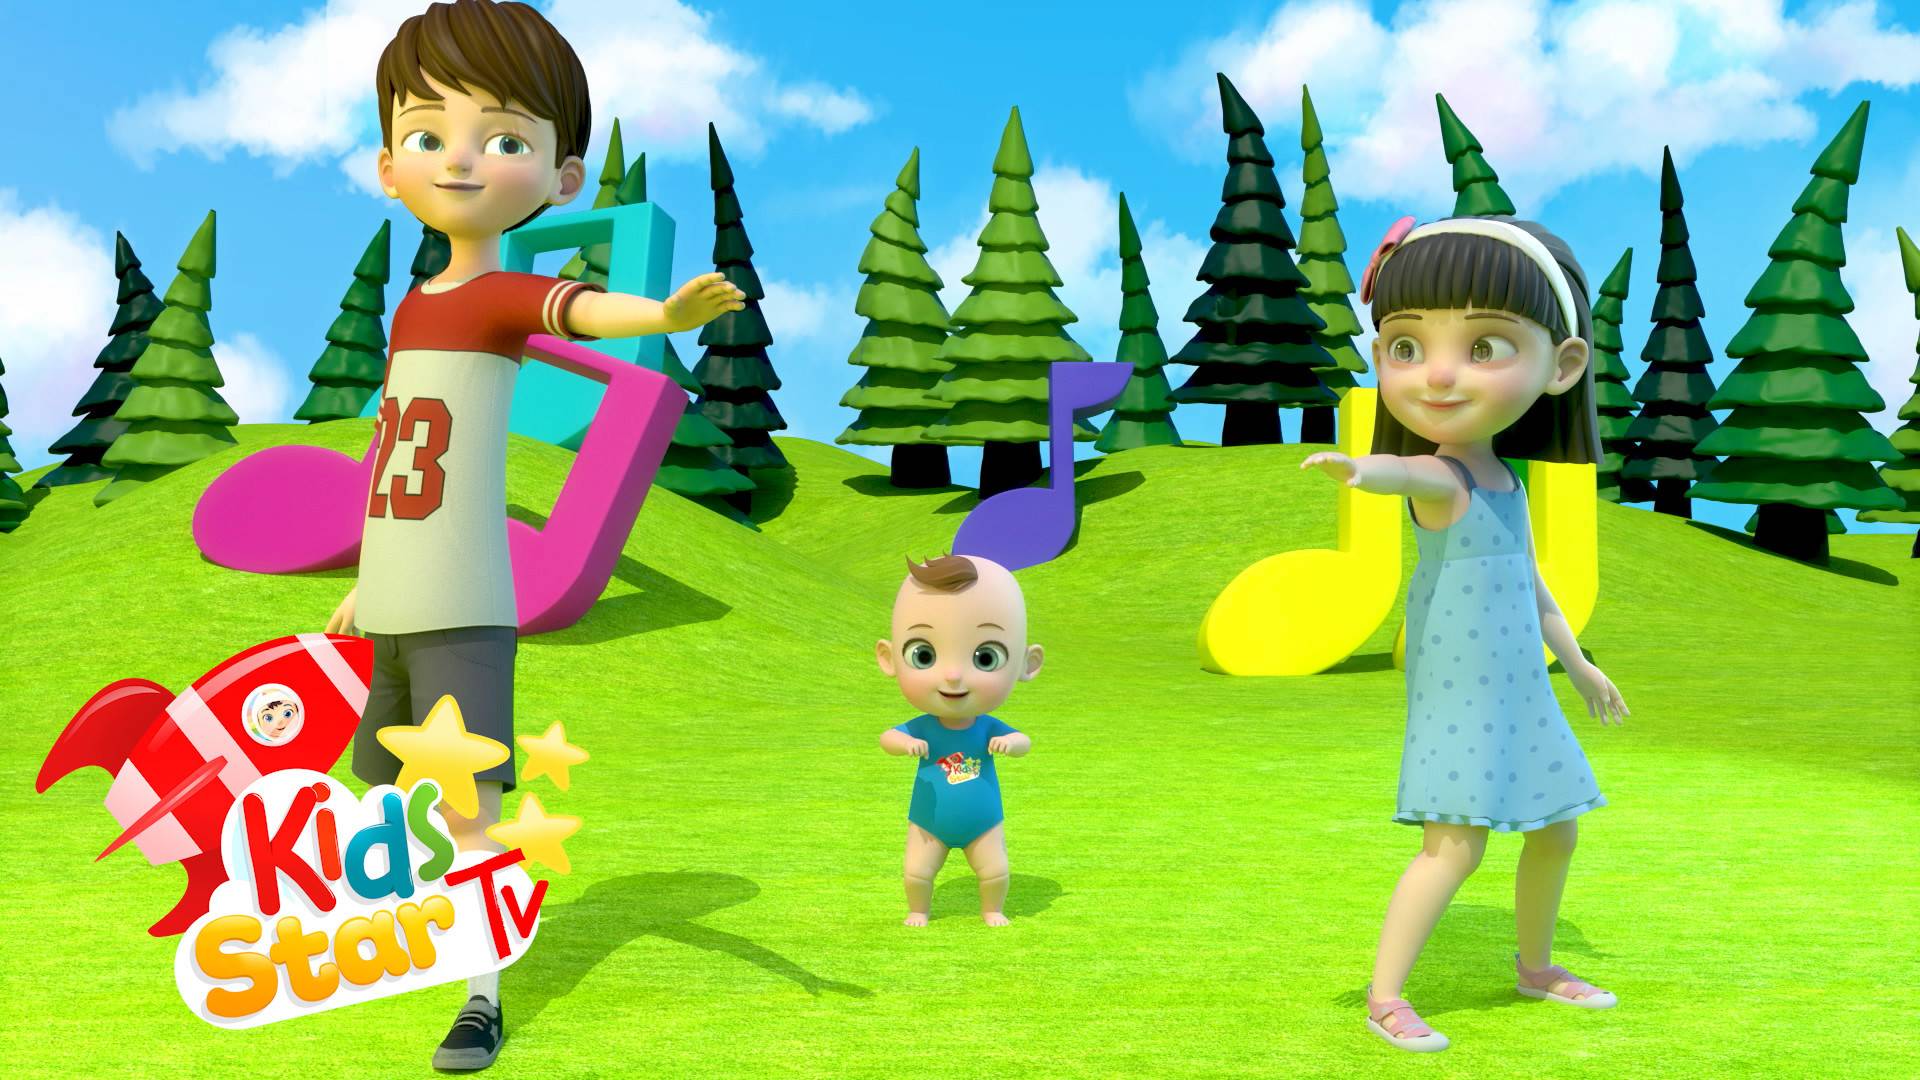 Colors Song Learn Colors - Nursery Rhymes and Kids Songs - Kids Star TV -  أغنية للأطفال | Vidio